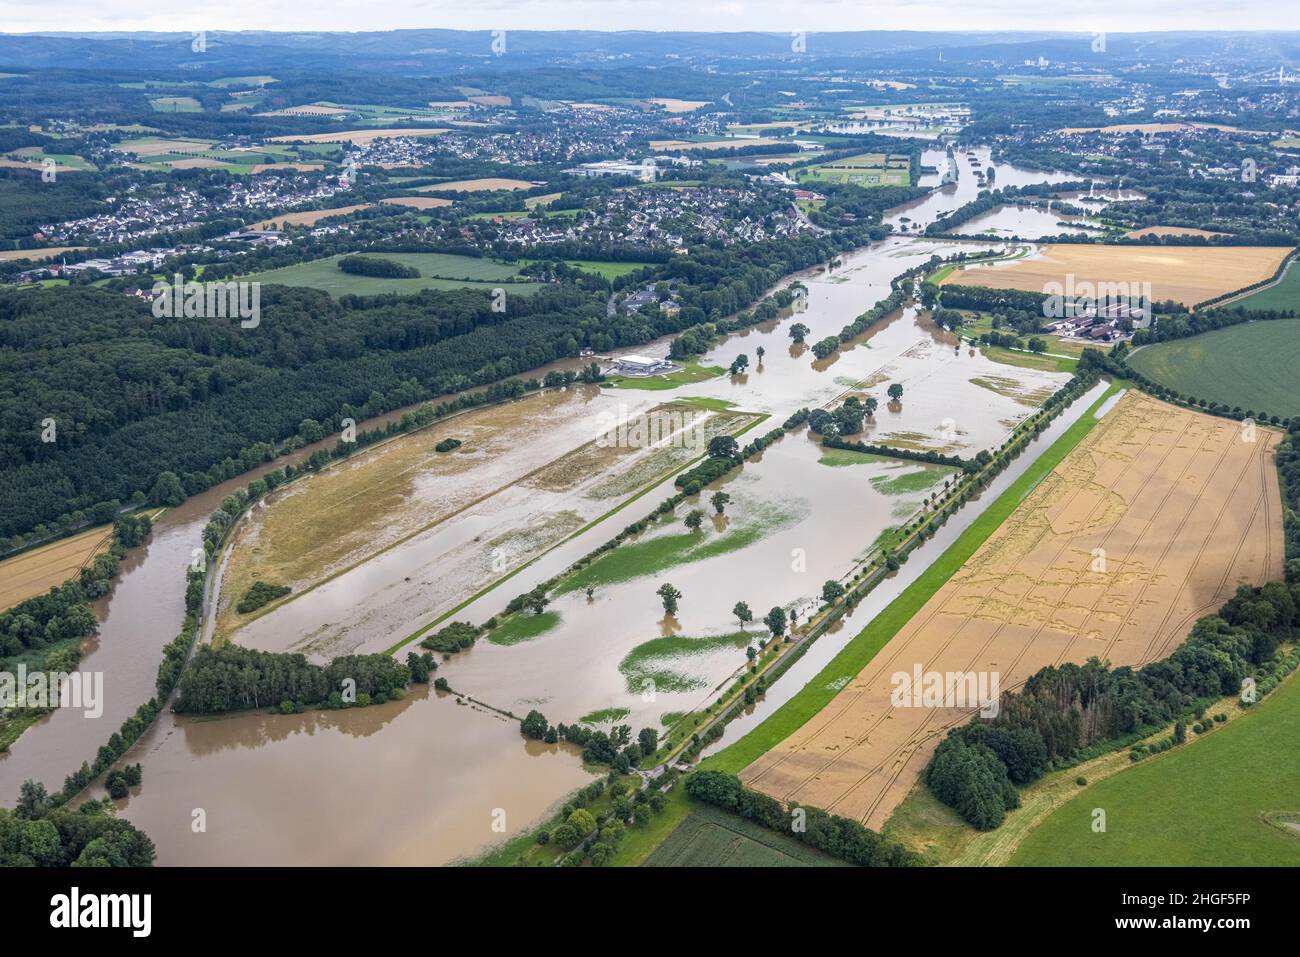 Vista aerea, alluvione della Ruhr, Geisecke, Schwerte, area della Ruhr, Renania settentrionale-Vestfalia, Germania, DE, Europa, vista degli uccelli, fotografia aerea, fotografia aerea Foto Stock